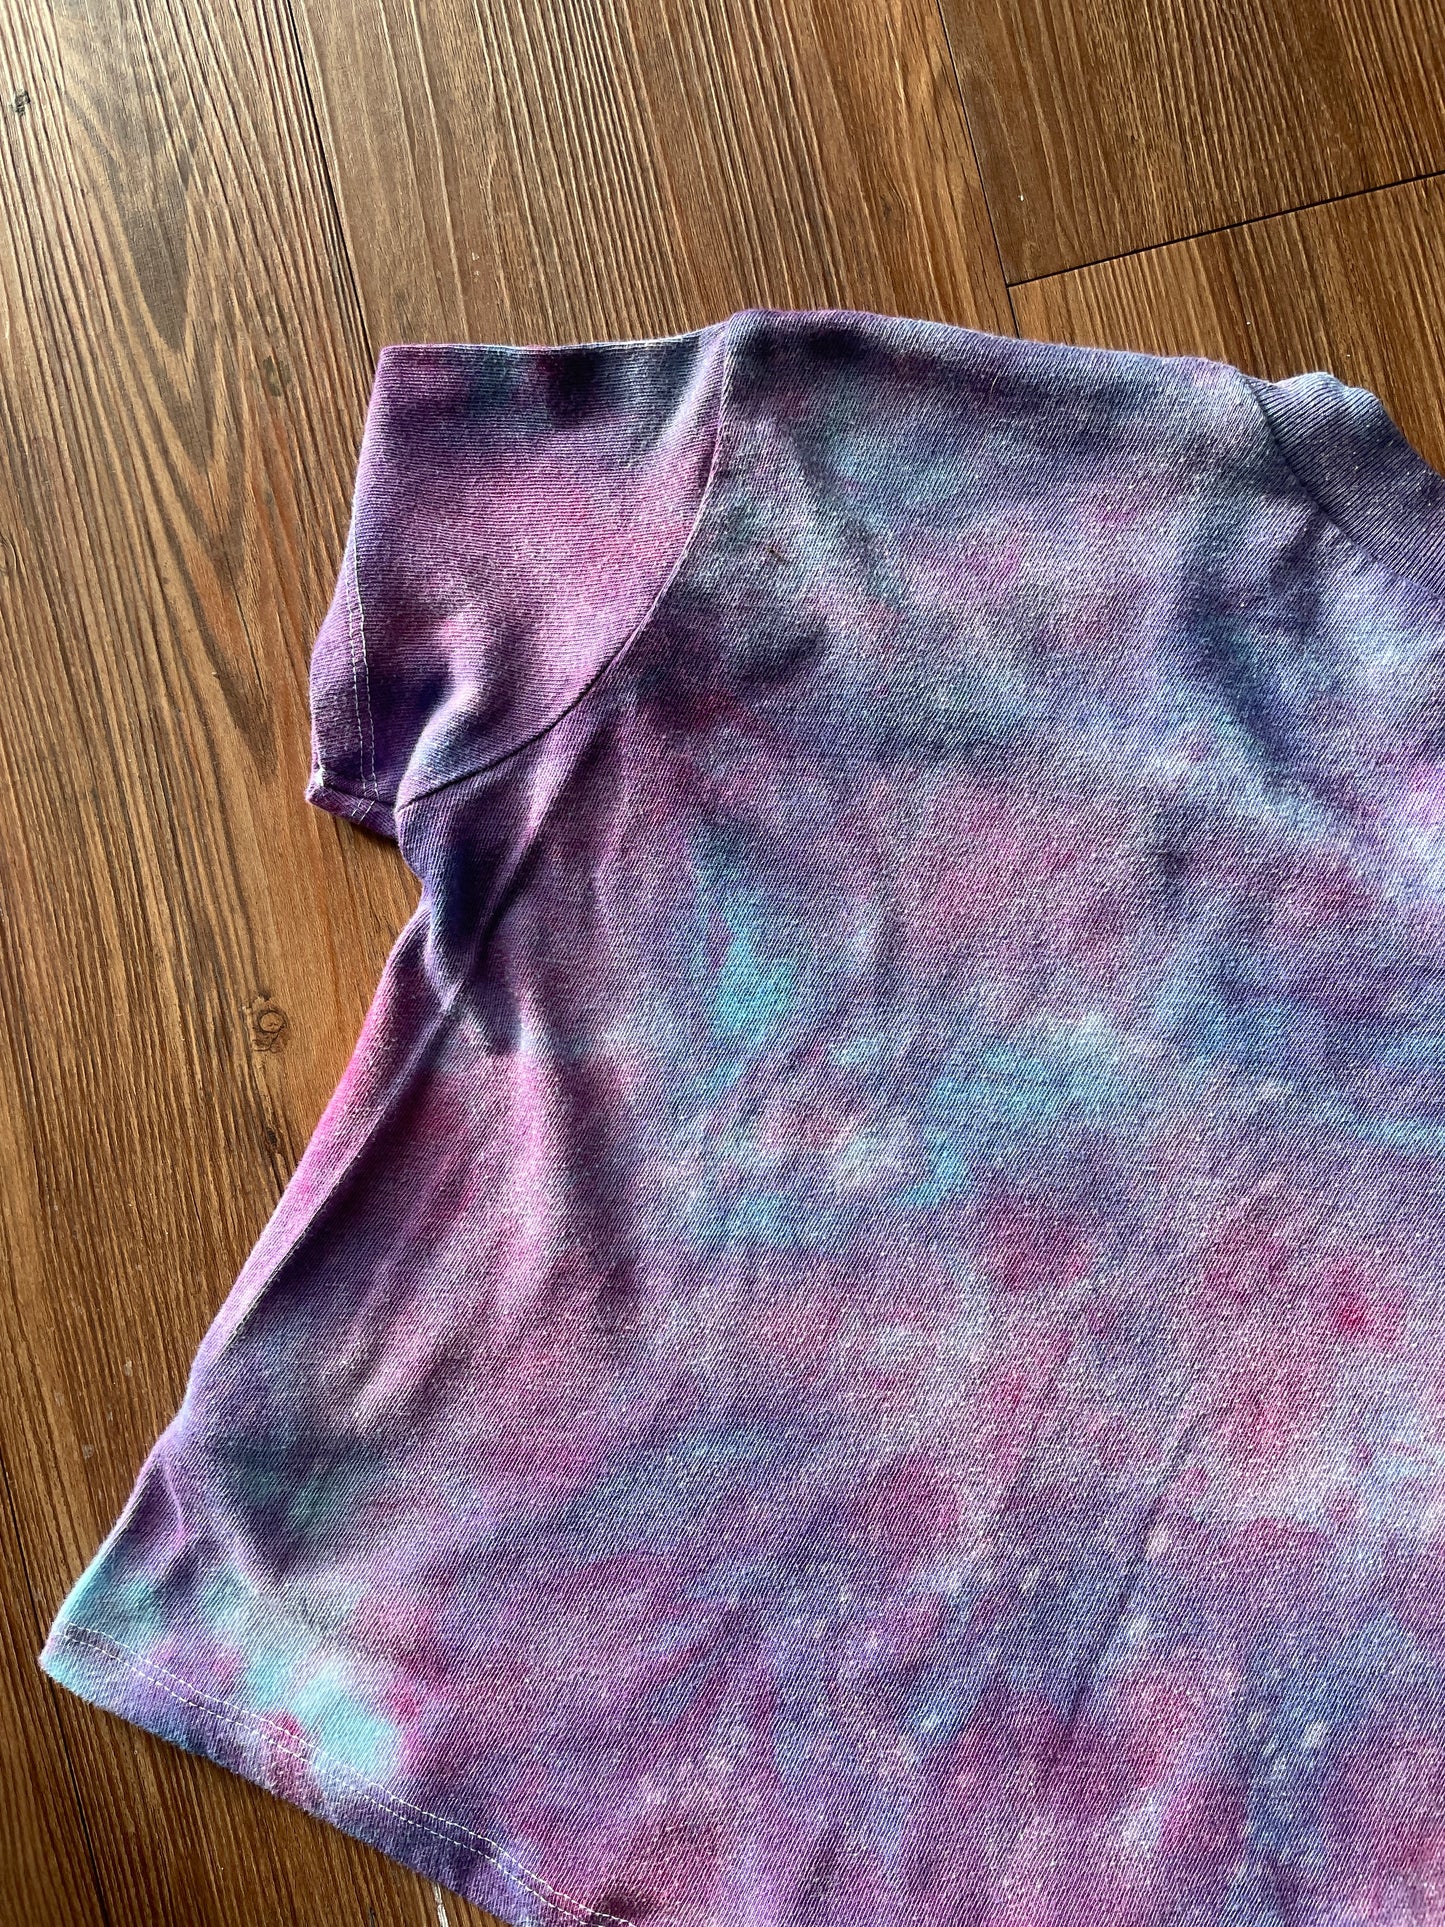 SMALL Women’s Galaxy Tie Dye Crop Top | Pastel Purple Ice Dye Short Sleeve Cropped T-Shirt